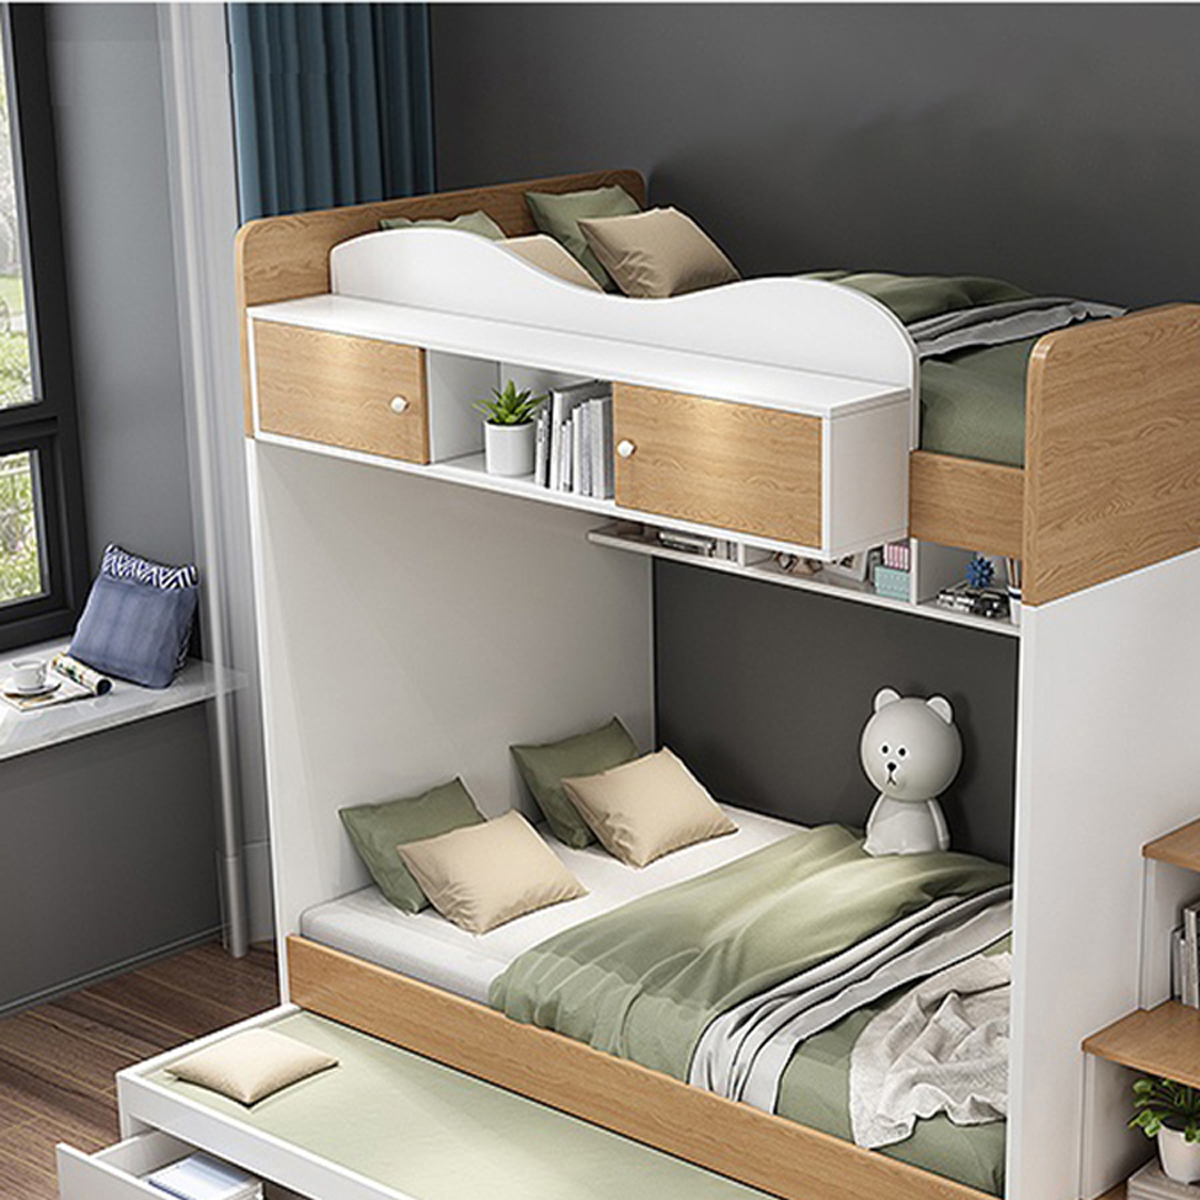 Giường tầng thông minh sẽ là sự lựa chọn hoàn hảo cho không gian ngủ của bạn. Với thiết kế thông minh và tinh chỉnh đáp ứng mọi nhu cầu, giường tầng này sẽ trở thành nơi ấm áp, tiện nghi và tạo cảm giác thoải mái cho những giấc ngủ đêm dài.